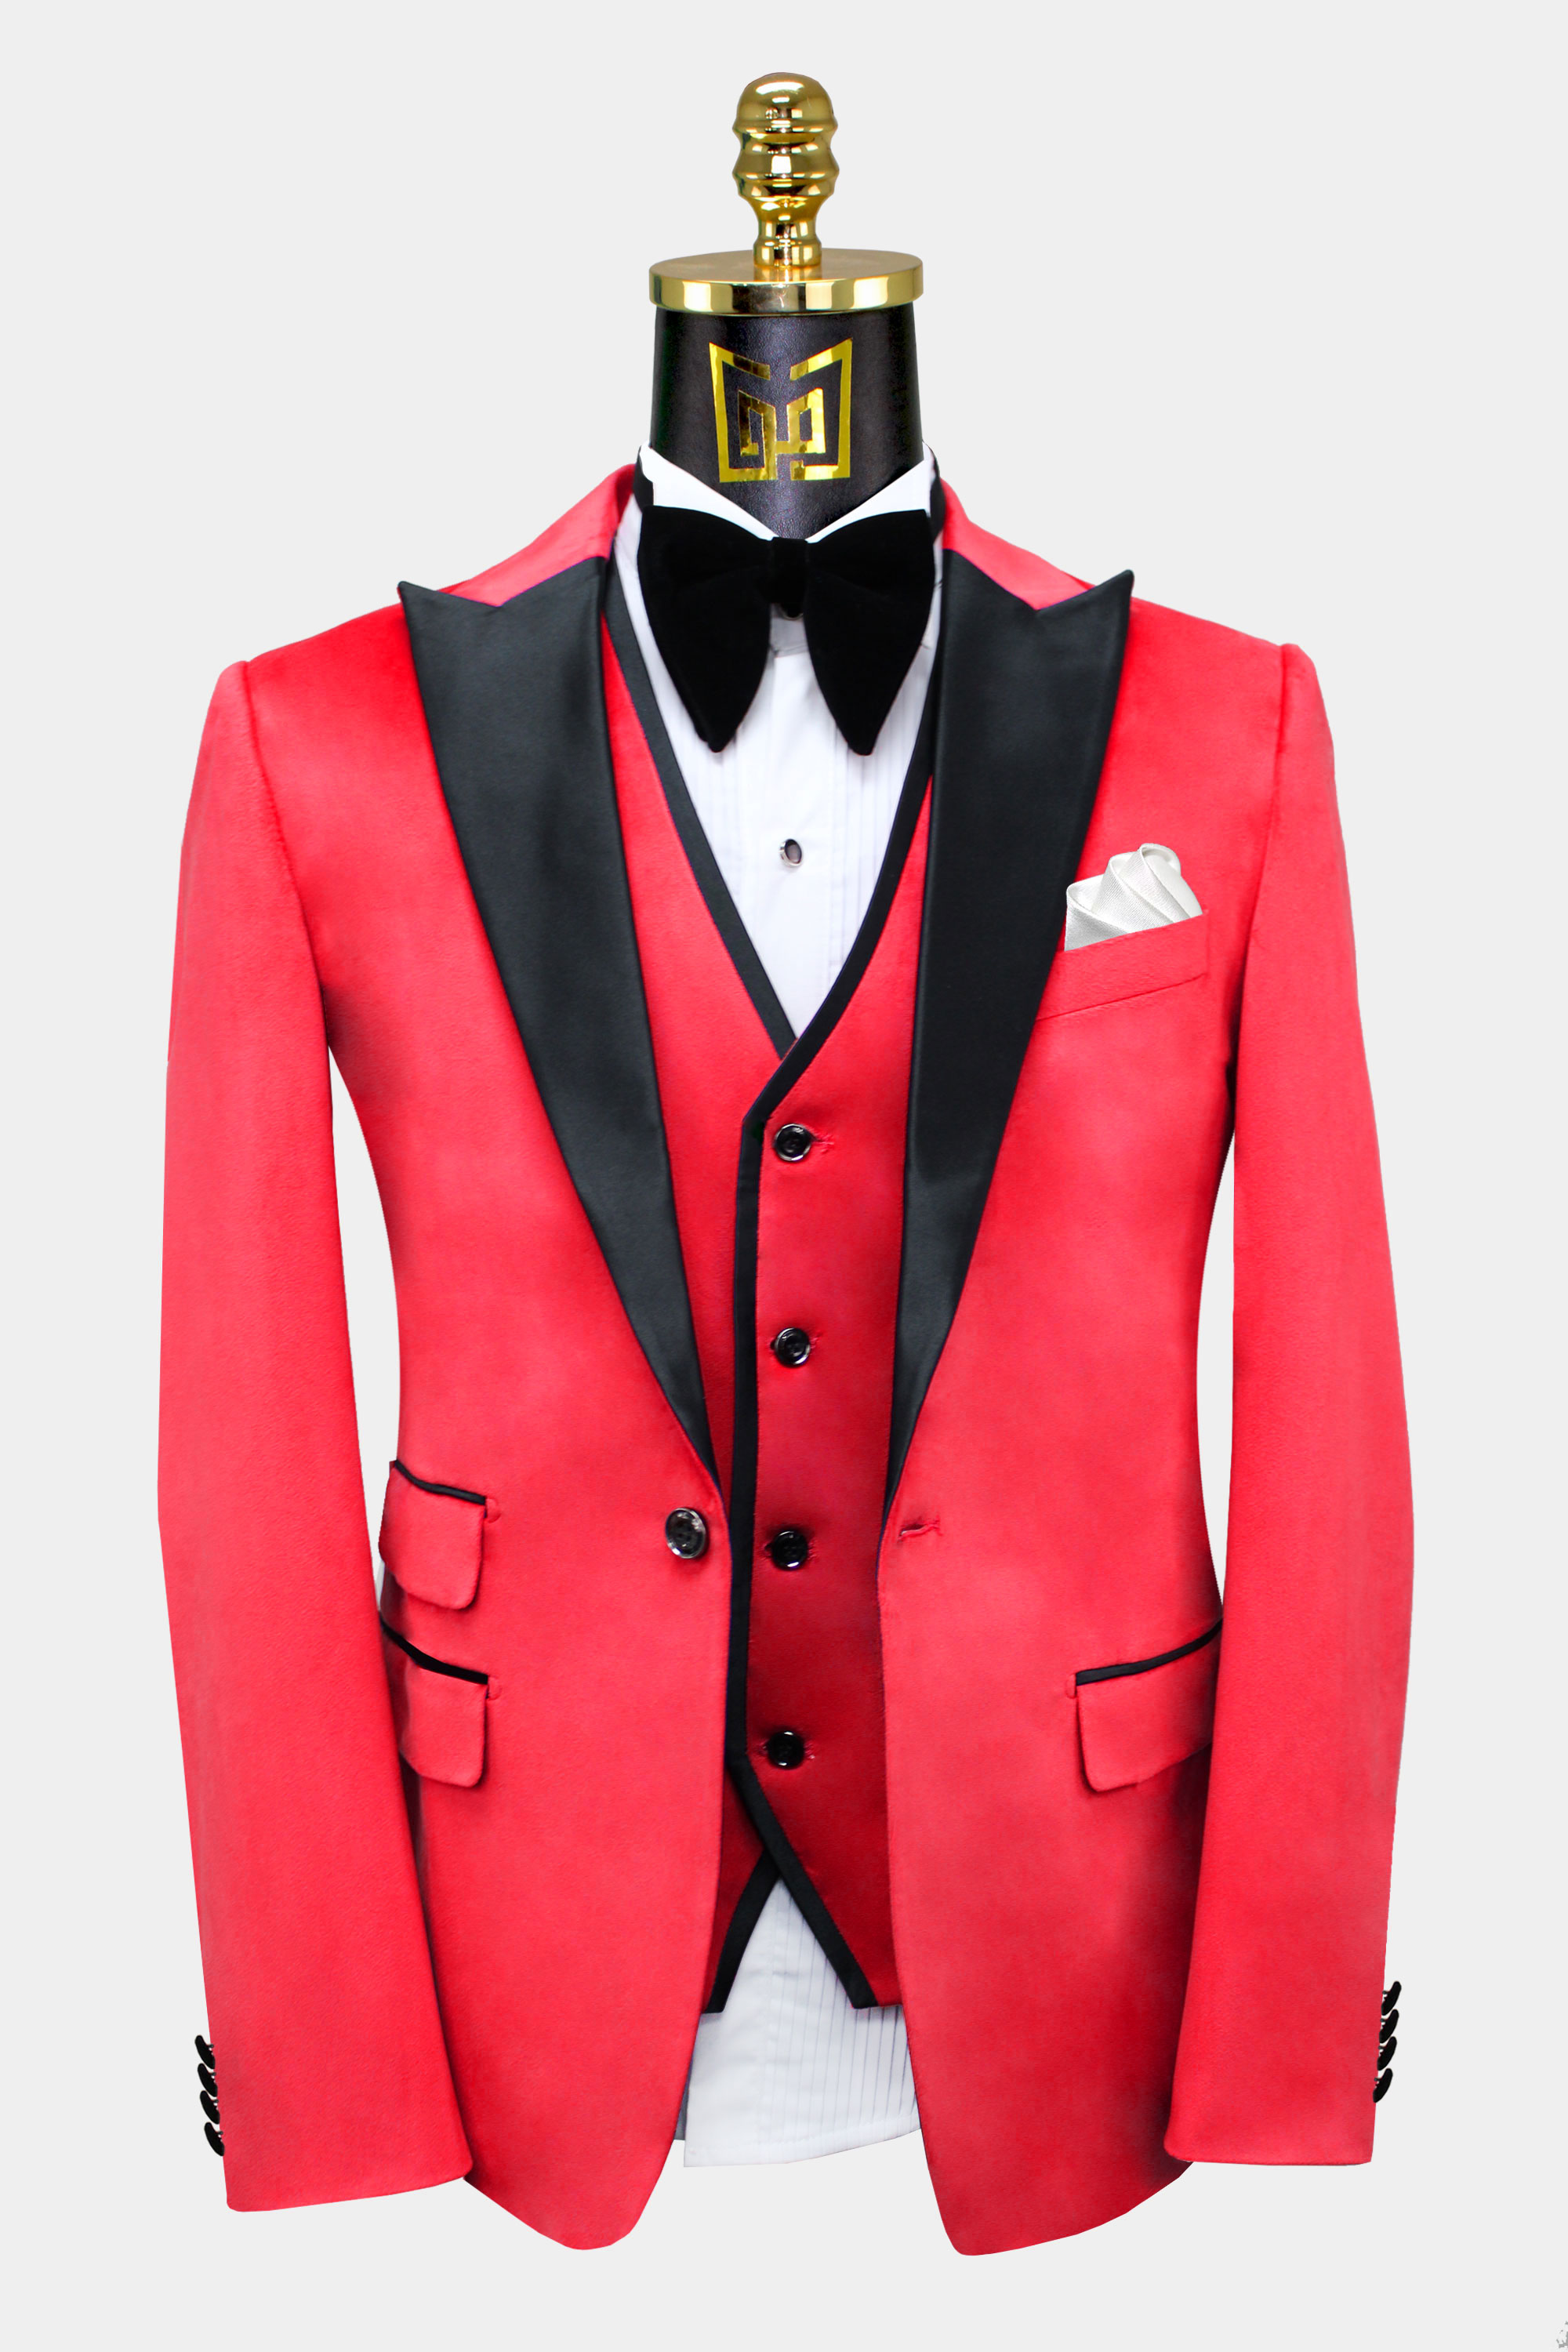 Mens-Red-Velvet-Tuxedo-Jacket-Wedding-Groom-Blazer-from-Gentlemansguru.com